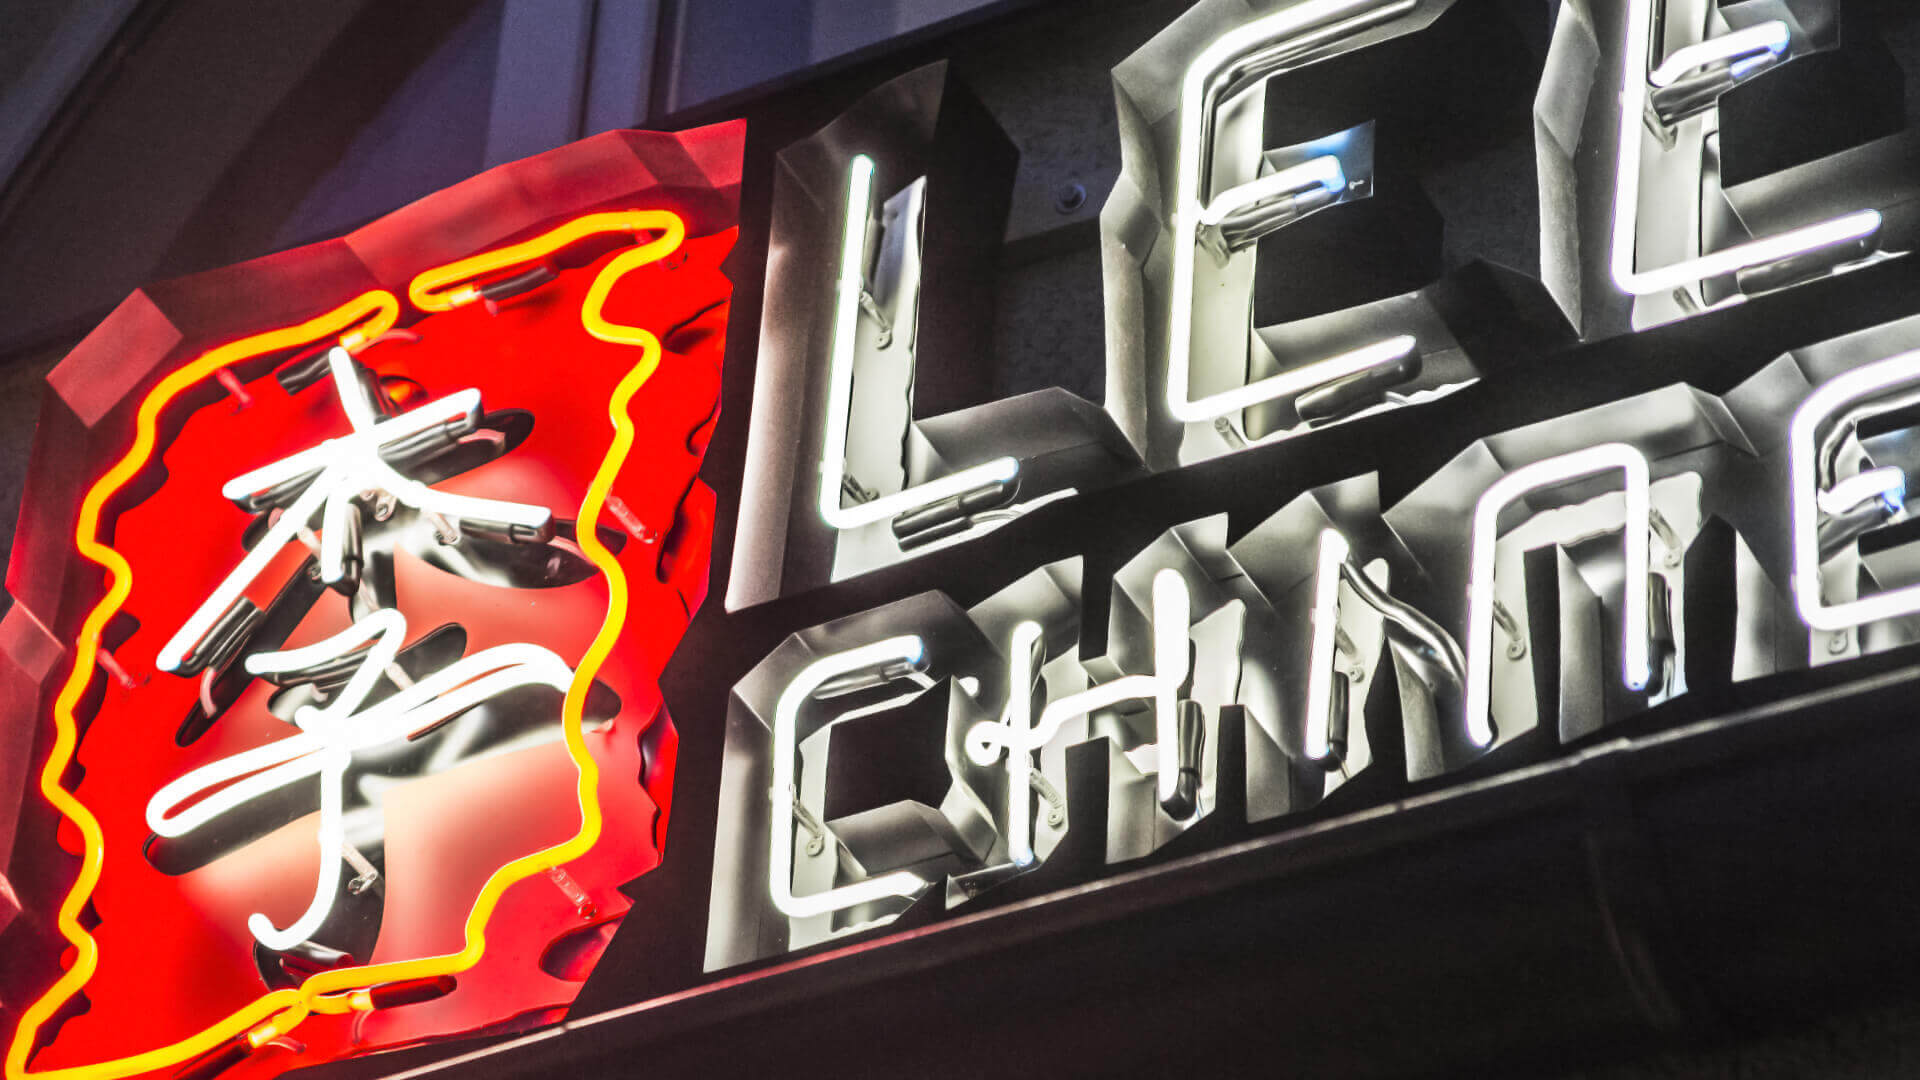 Lees Chines - neon-lees-chinese-neon-nad-wejsciem-do-restauracji-neon-na-scianie-neon-na-zewnatrza-neon-w-melatu-nierdzewnym-logo-sign-chinskie-znaki-litery-neonowe-litery-podswietlane-china-restuarant-gdansk